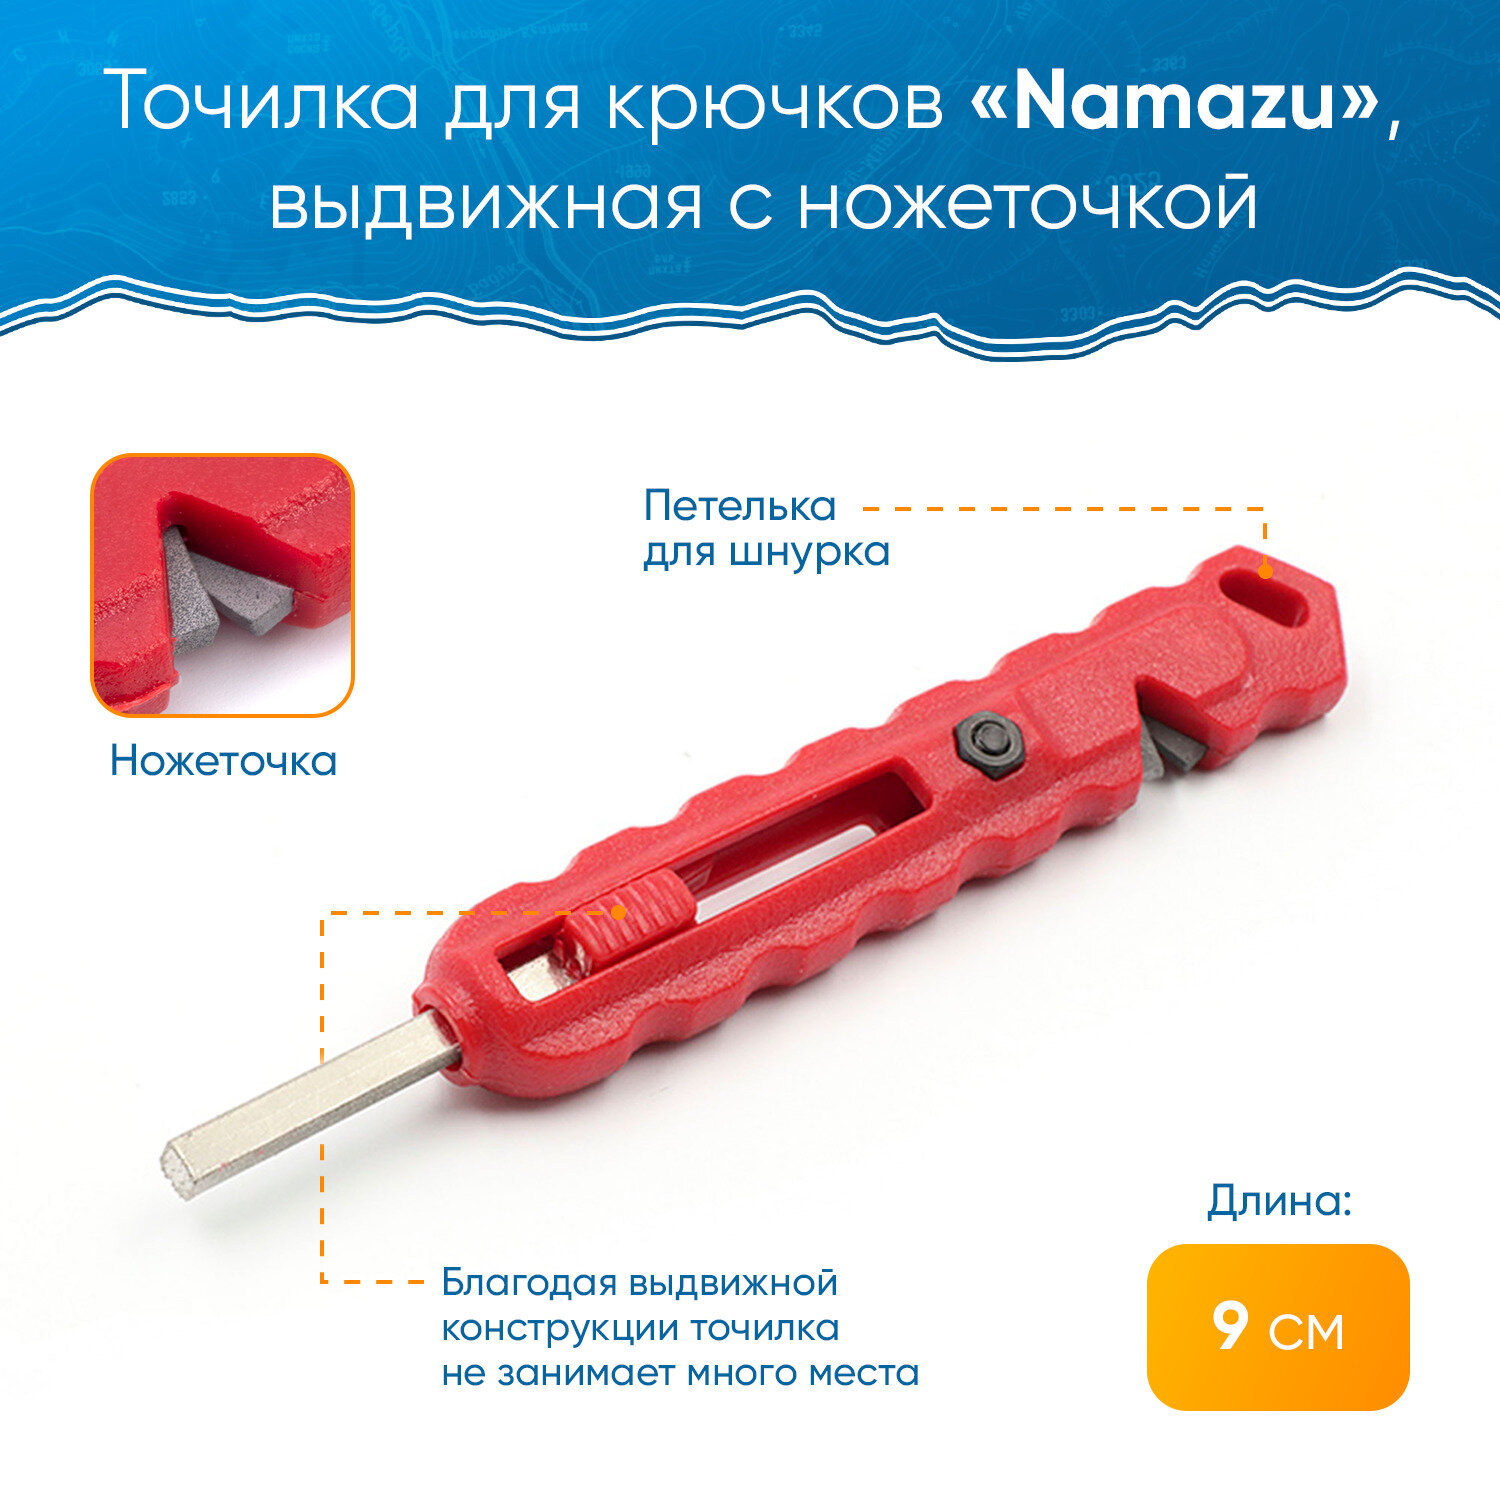 Точилка для крючков Namazu выдвижная с ножеточкой, 90х15х6 мм